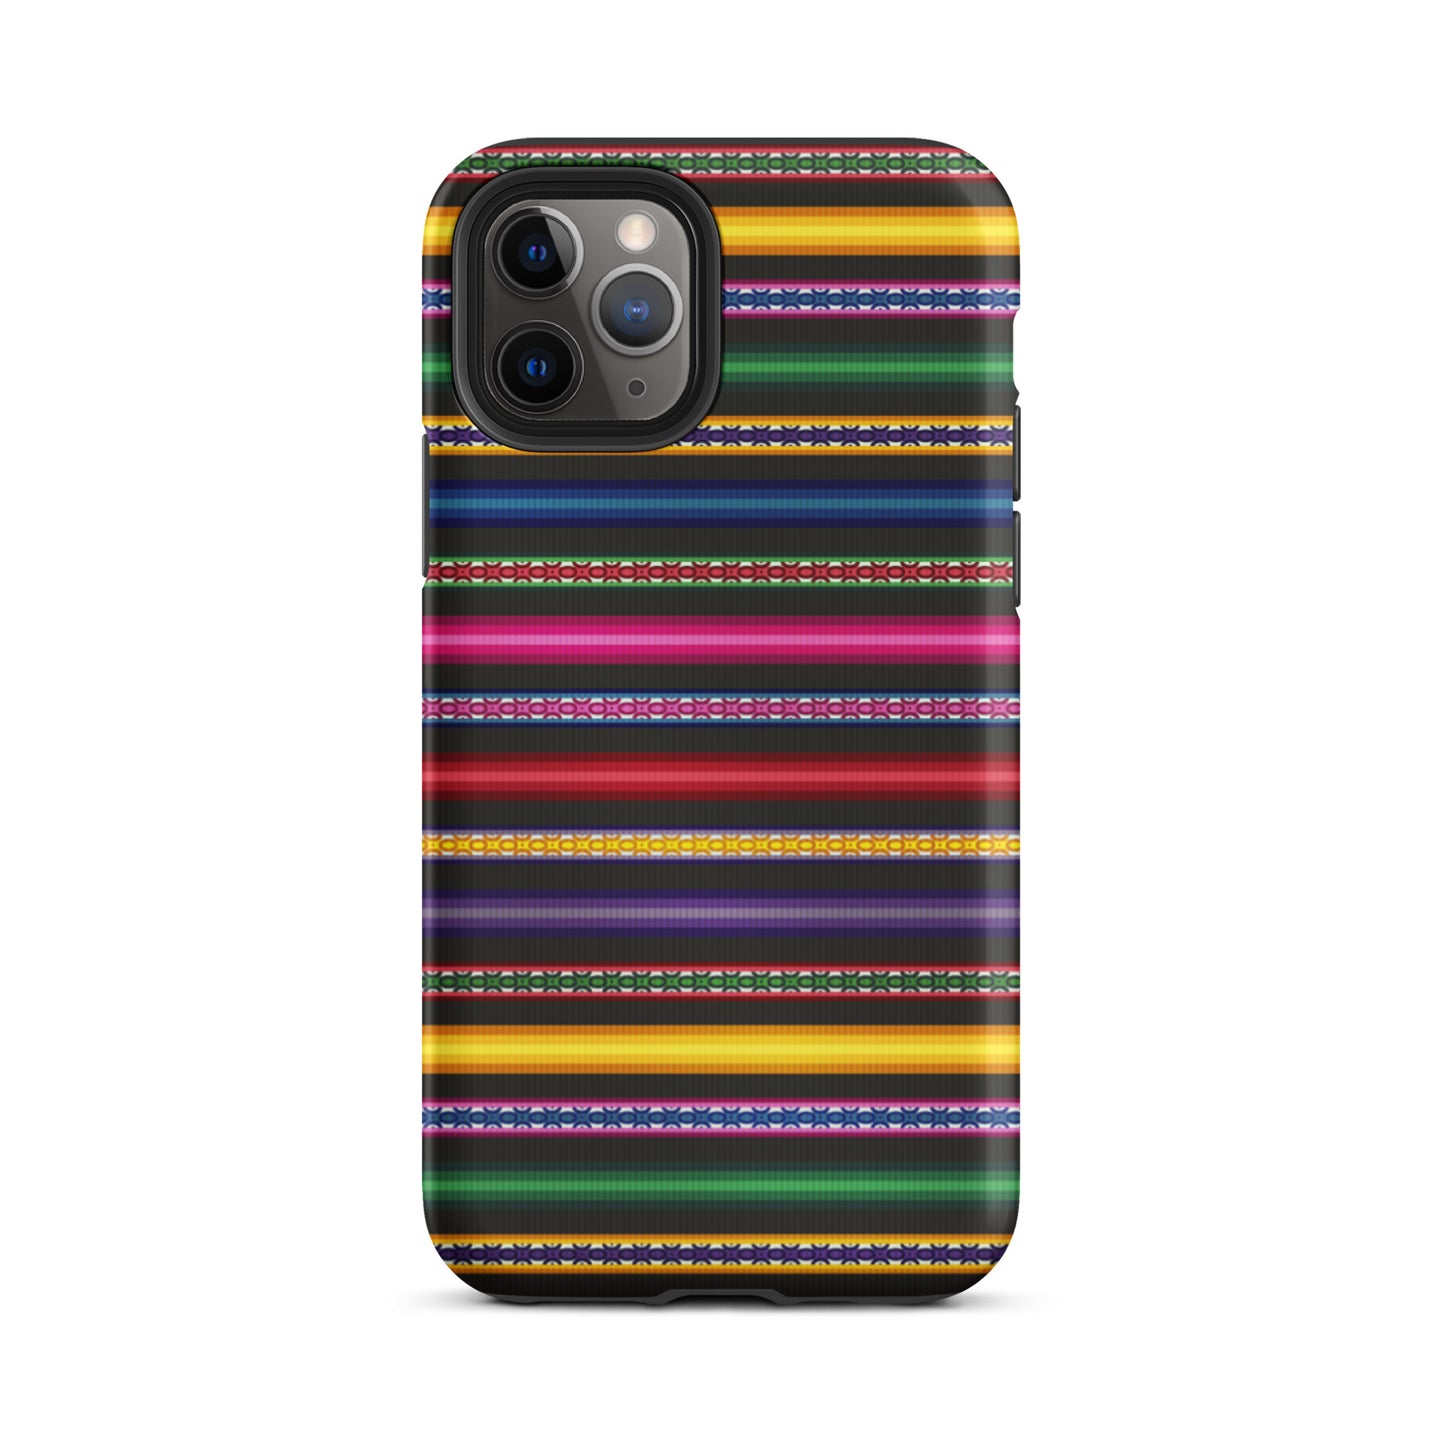 Peruvian Tough iPhone 11 Pro case